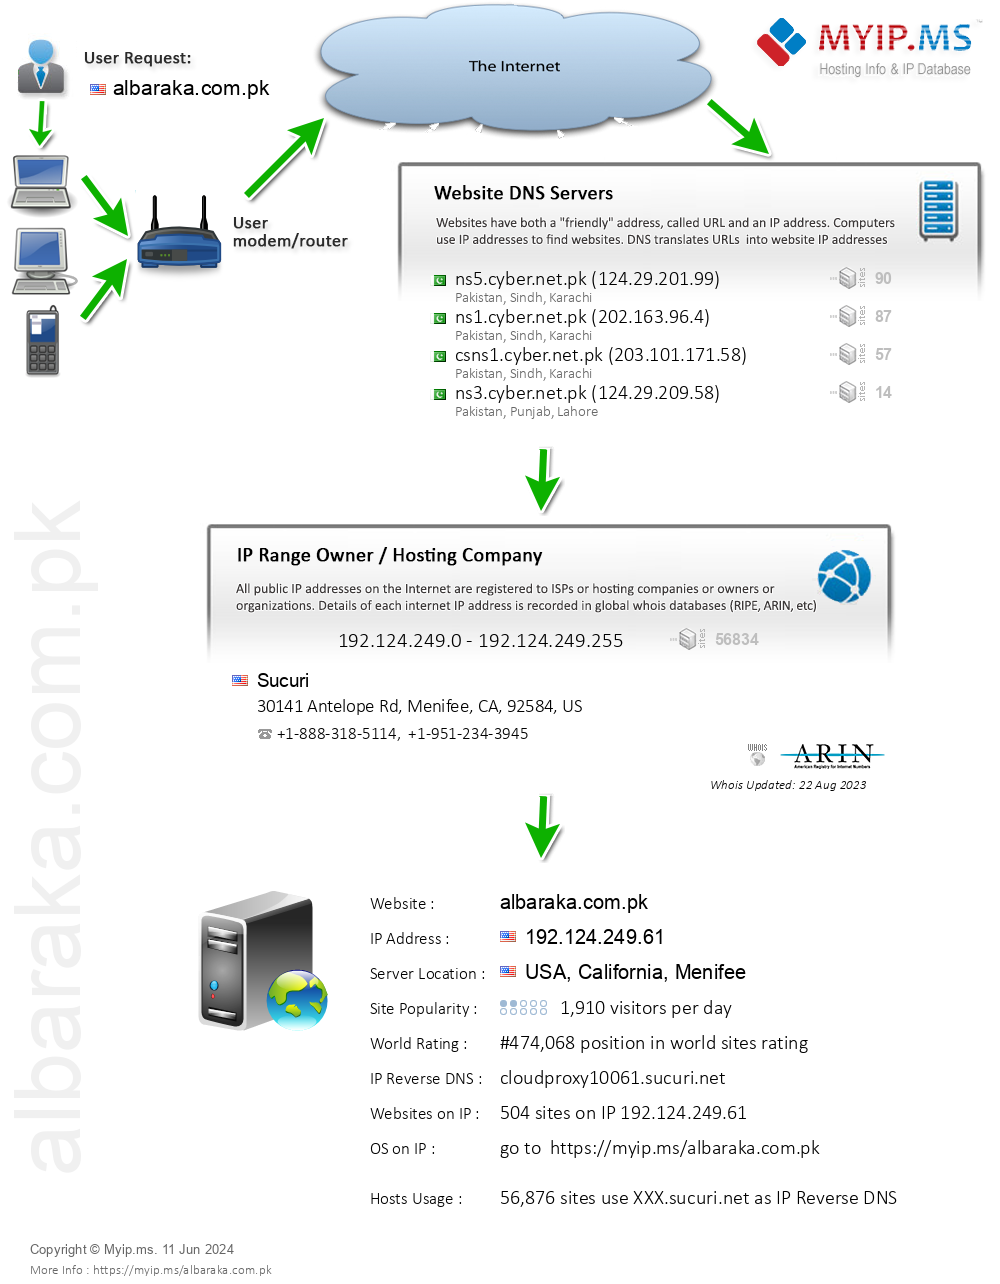 Albaraka.com.pk - Website Hosting Visual IP Diagram